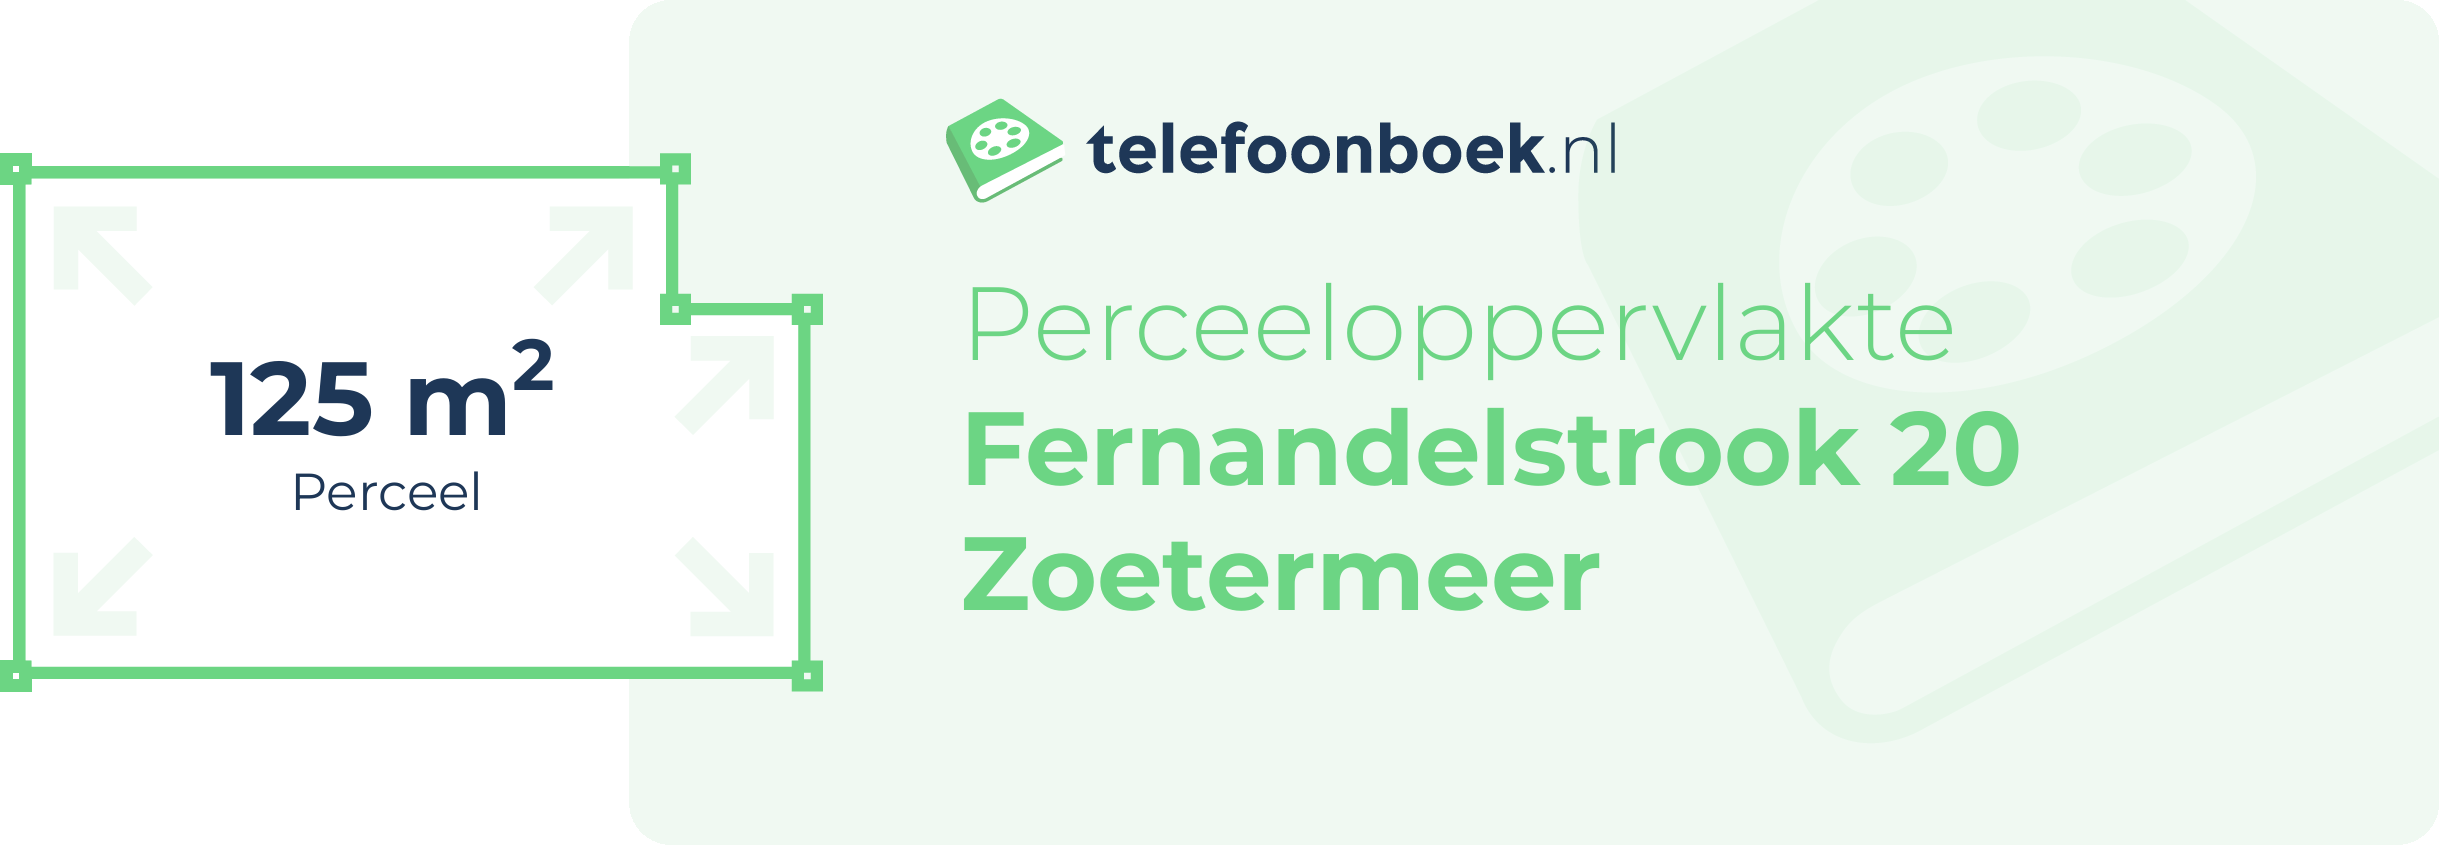 Perceeloppervlakte Fernandelstrook 20 Zoetermeer